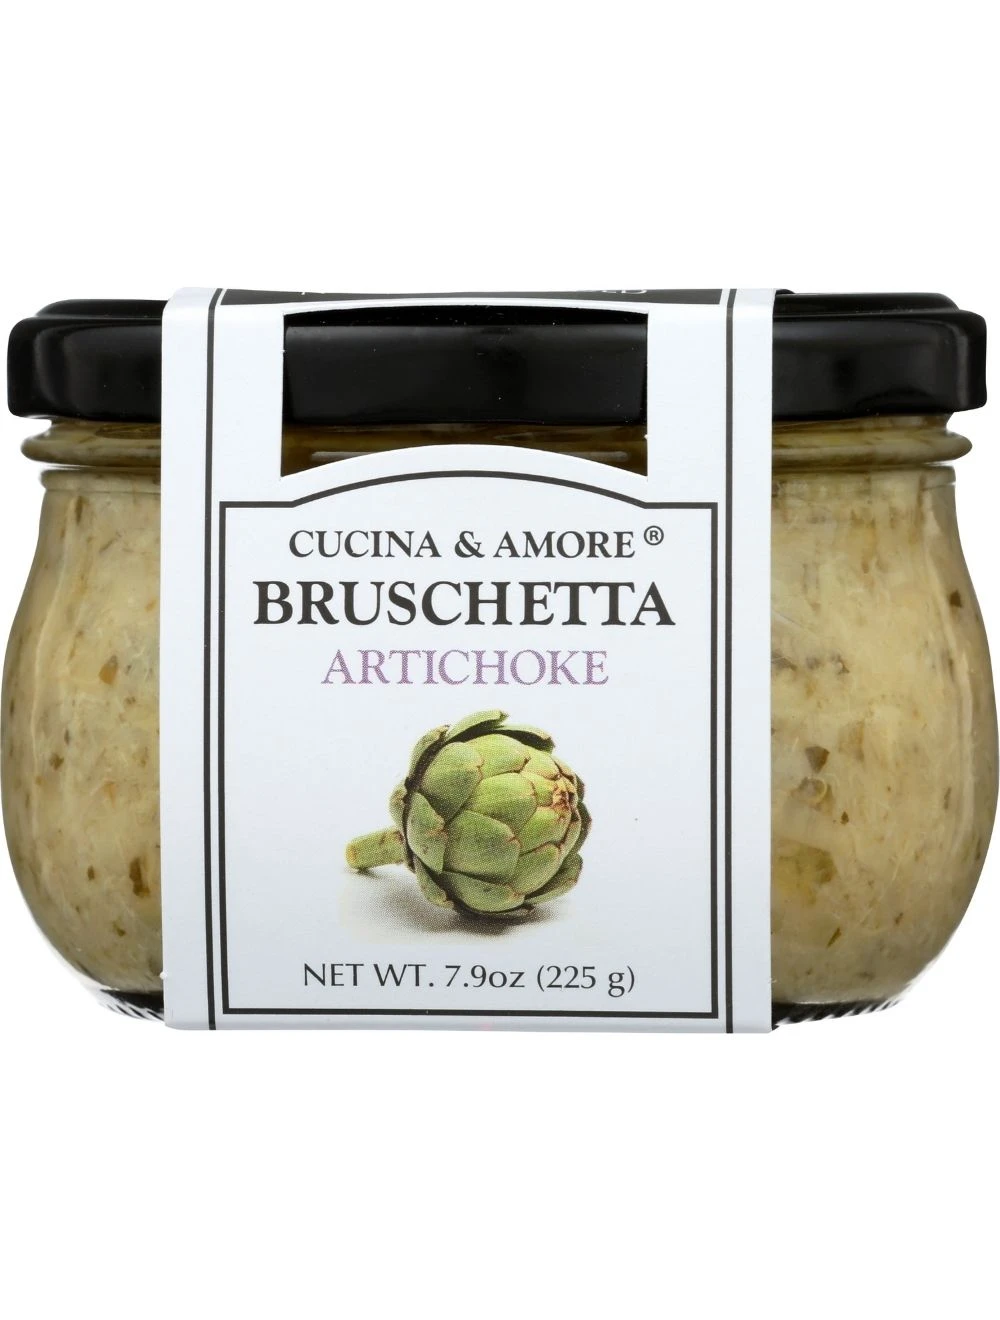 Cucina & Amore - Artichoke Bruschetta Topping